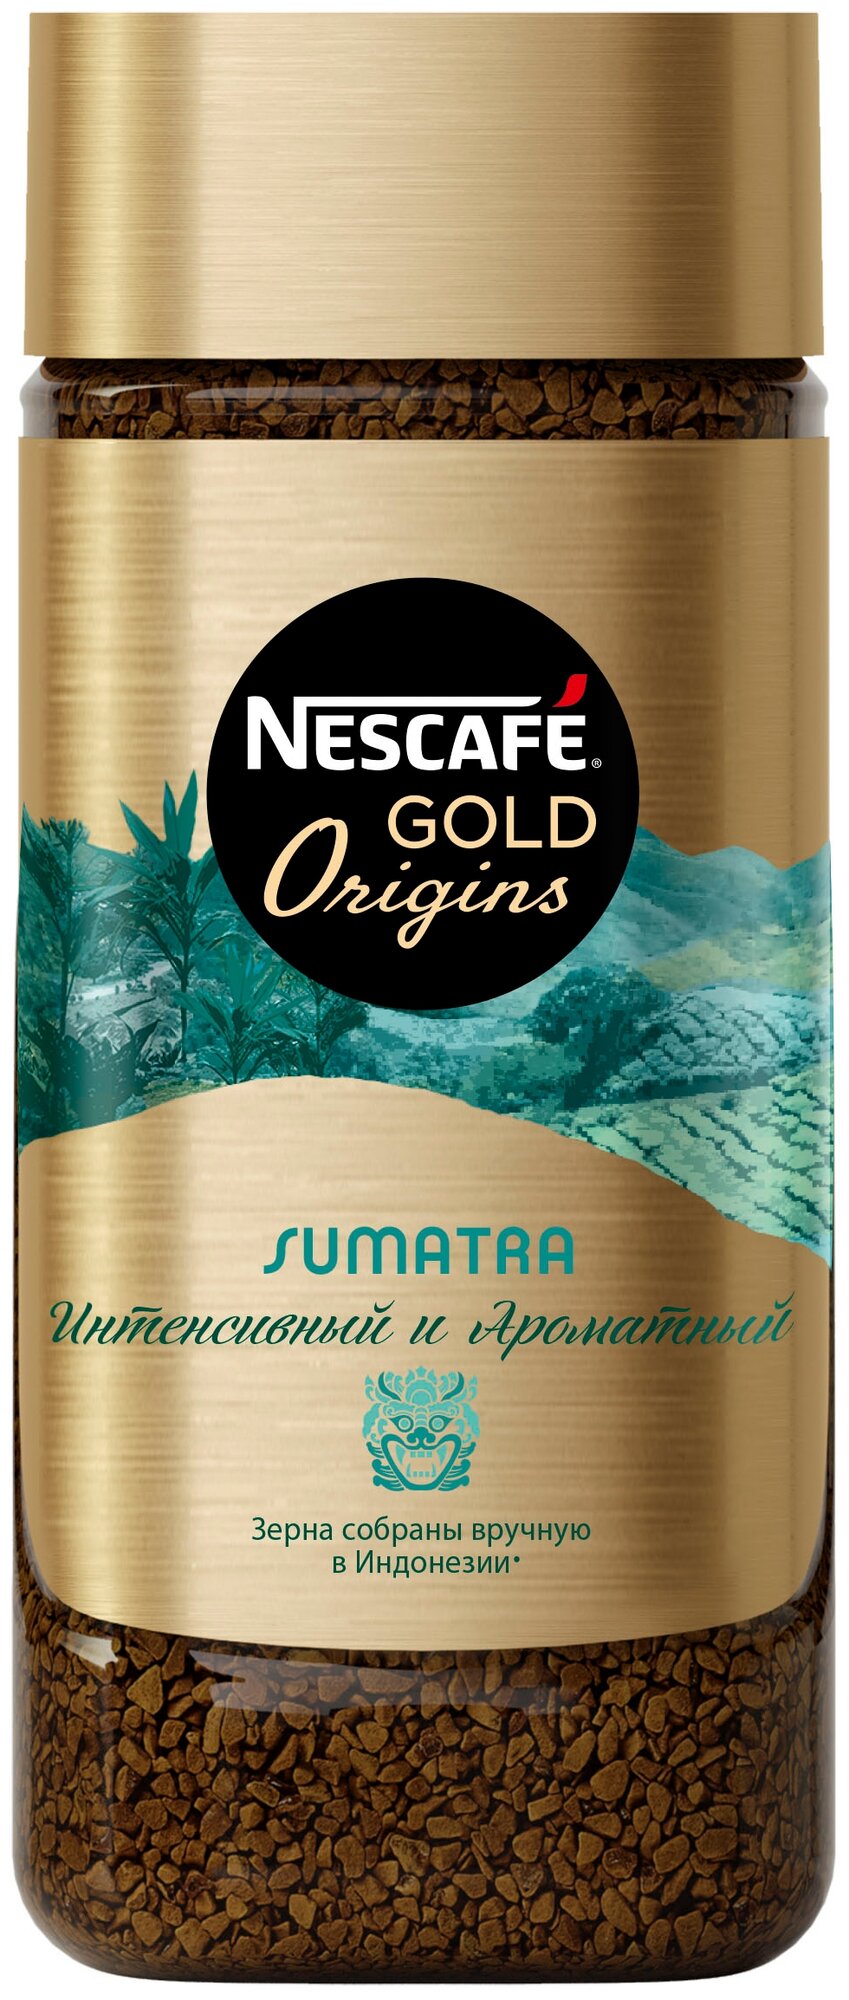 Nescafe Gold Origins Sumatra 85гр х 2шт Кофе растворимый сублимированный - фотография № 1